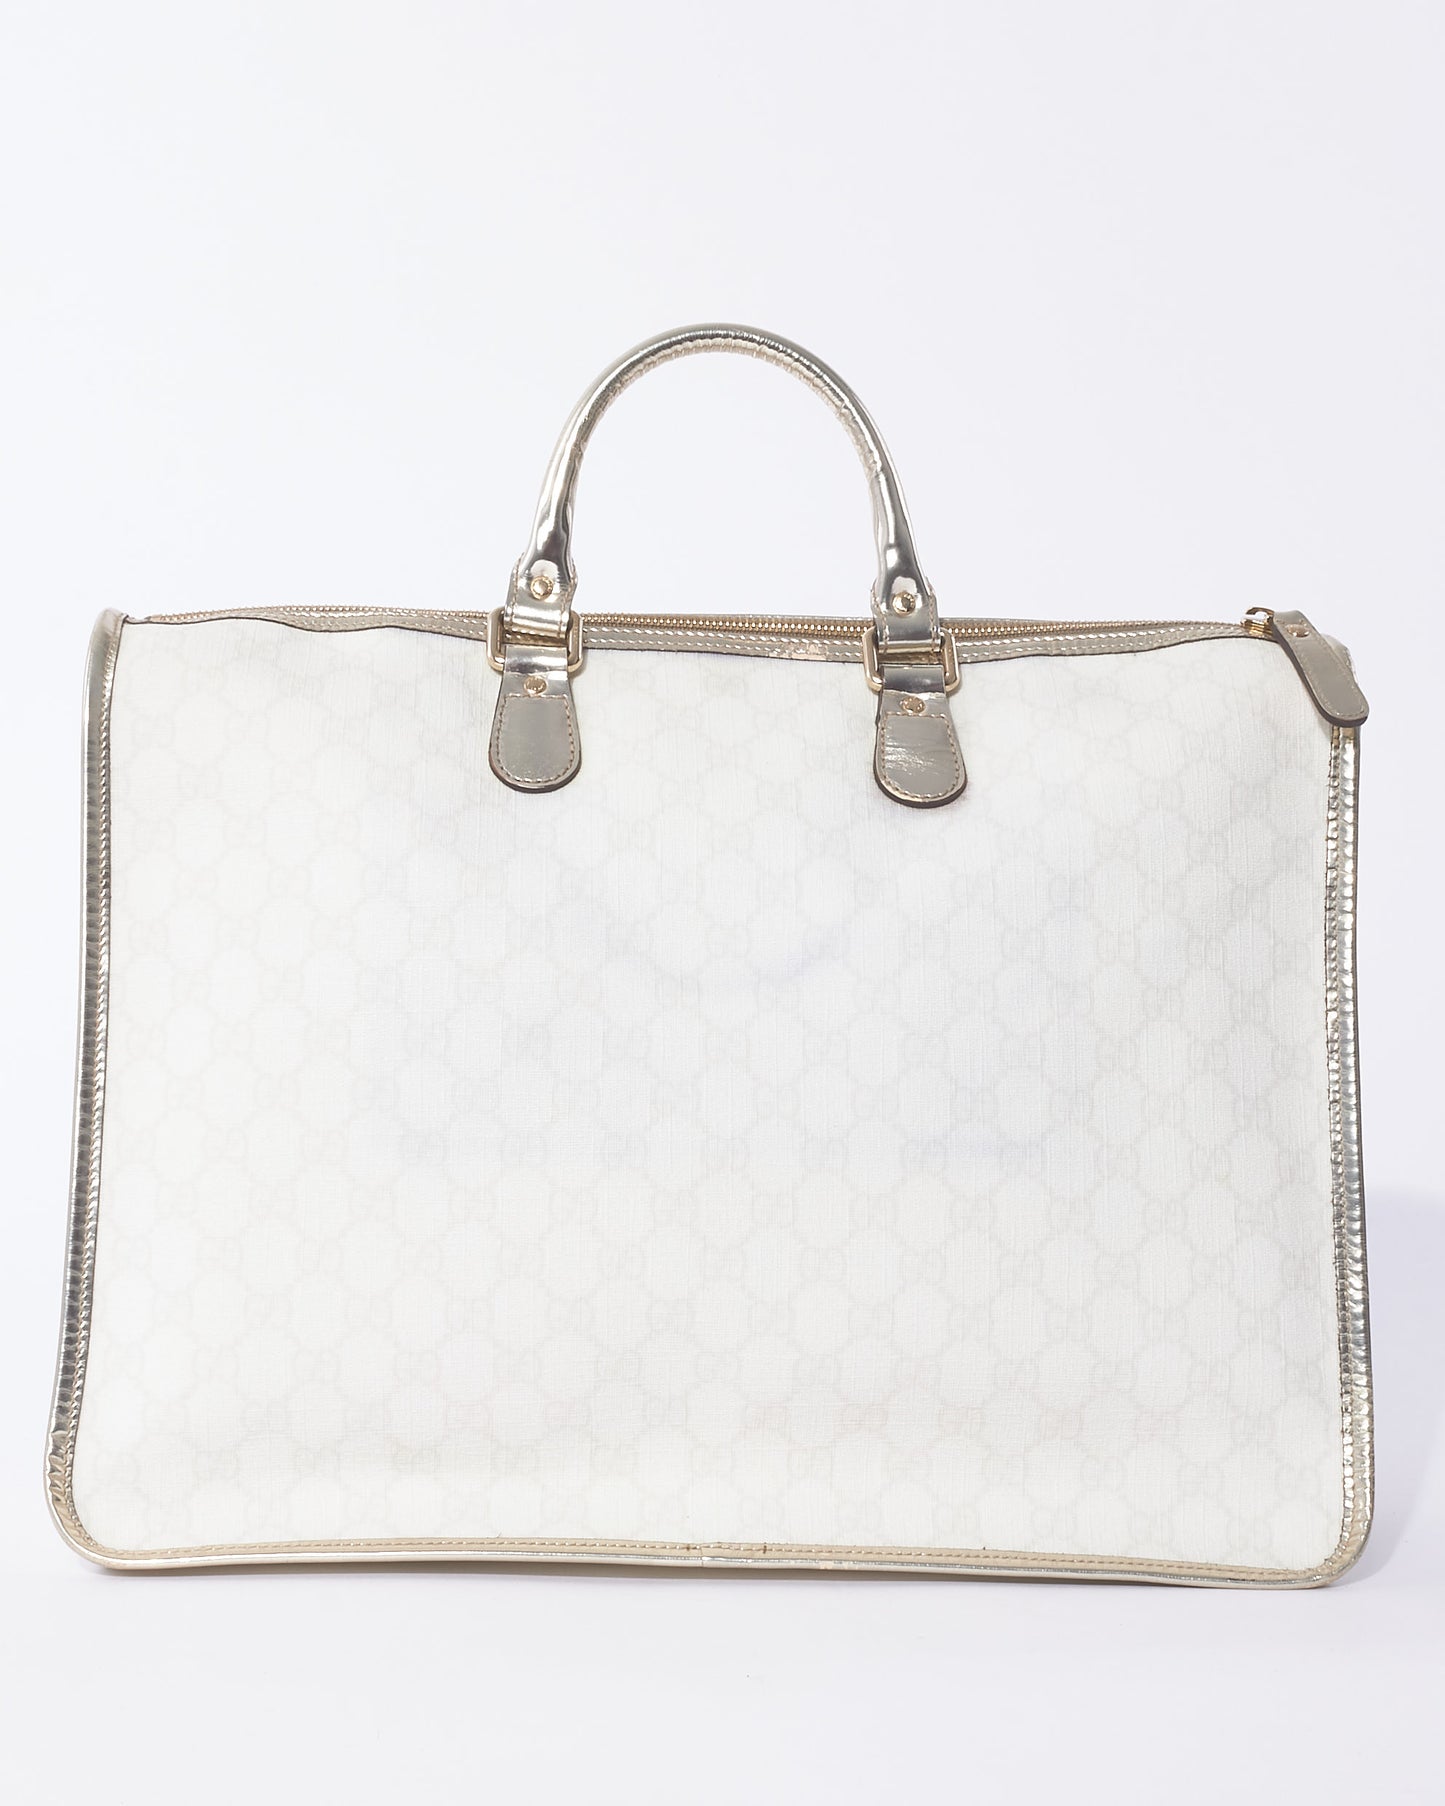 Gucci White Monogram GG Supreme Canvas & Silver Trim Top Handle Bag